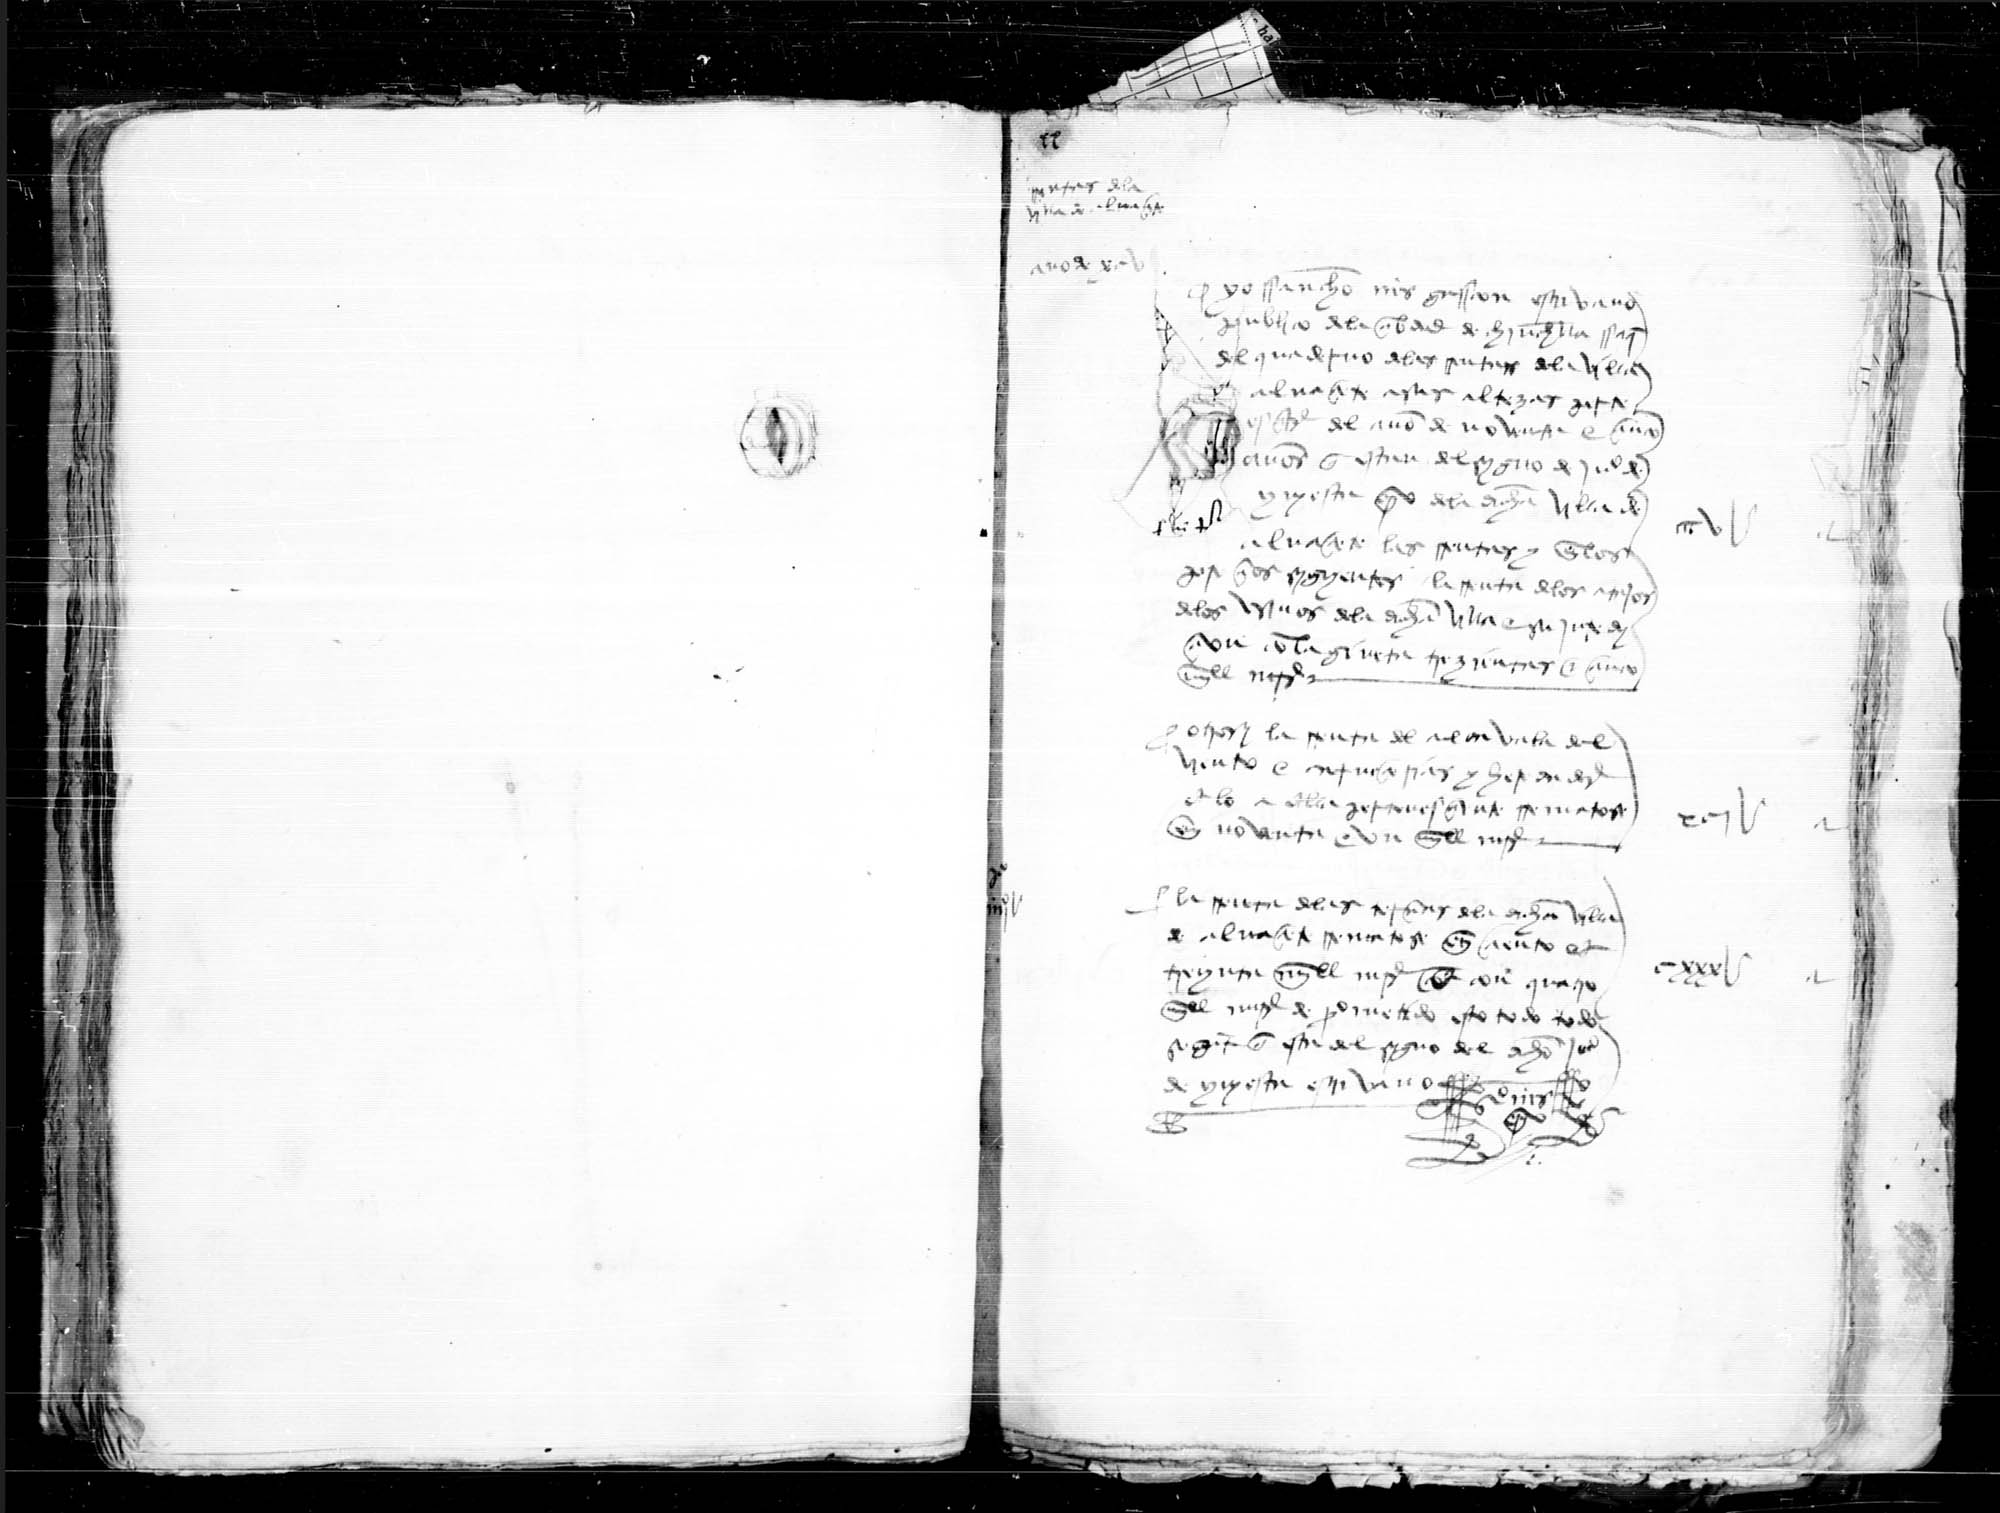 Testimonio notarial del valor en que se arrendaron ciertas rentas reales de la villa de Albacete, con La Gineta, del año 1495.